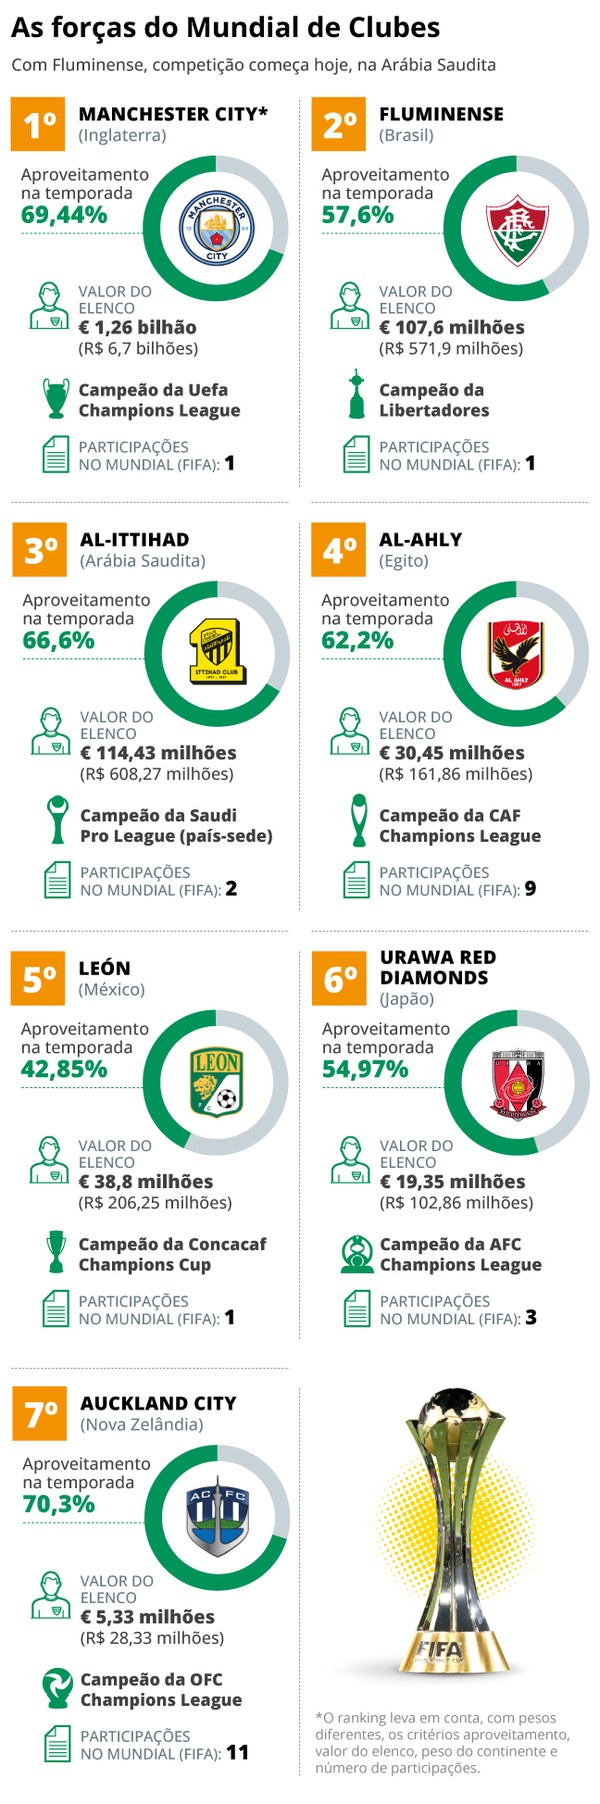 Mundial de Clubes: o que pode surpreender Fluminense e Manchester City?  Veja guia da competição - Folha PE